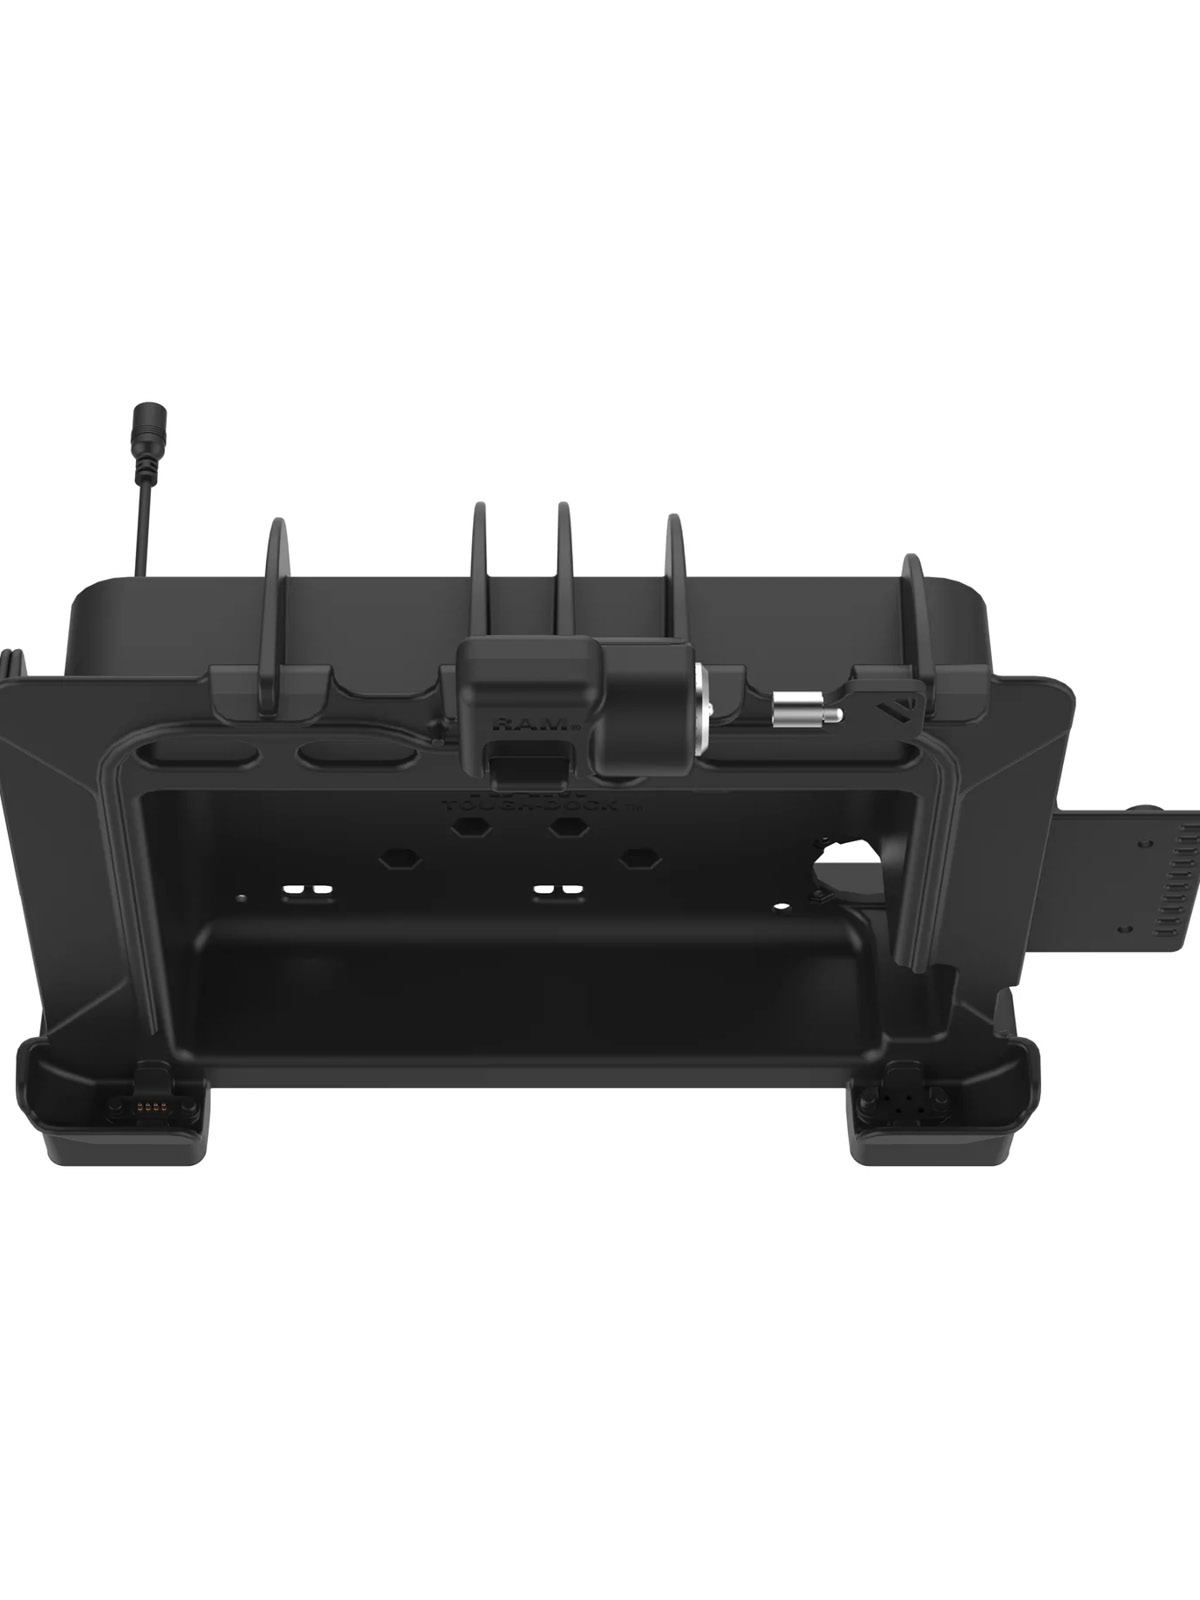 RAM Mounts Form-Fit Docking-Station für Zebra ET8x 2-in-1 Tablet - mit Stromversorung 5,5 mm Klinkenstecker, abschließbar, AMPS- u. VESA-Aufnahme